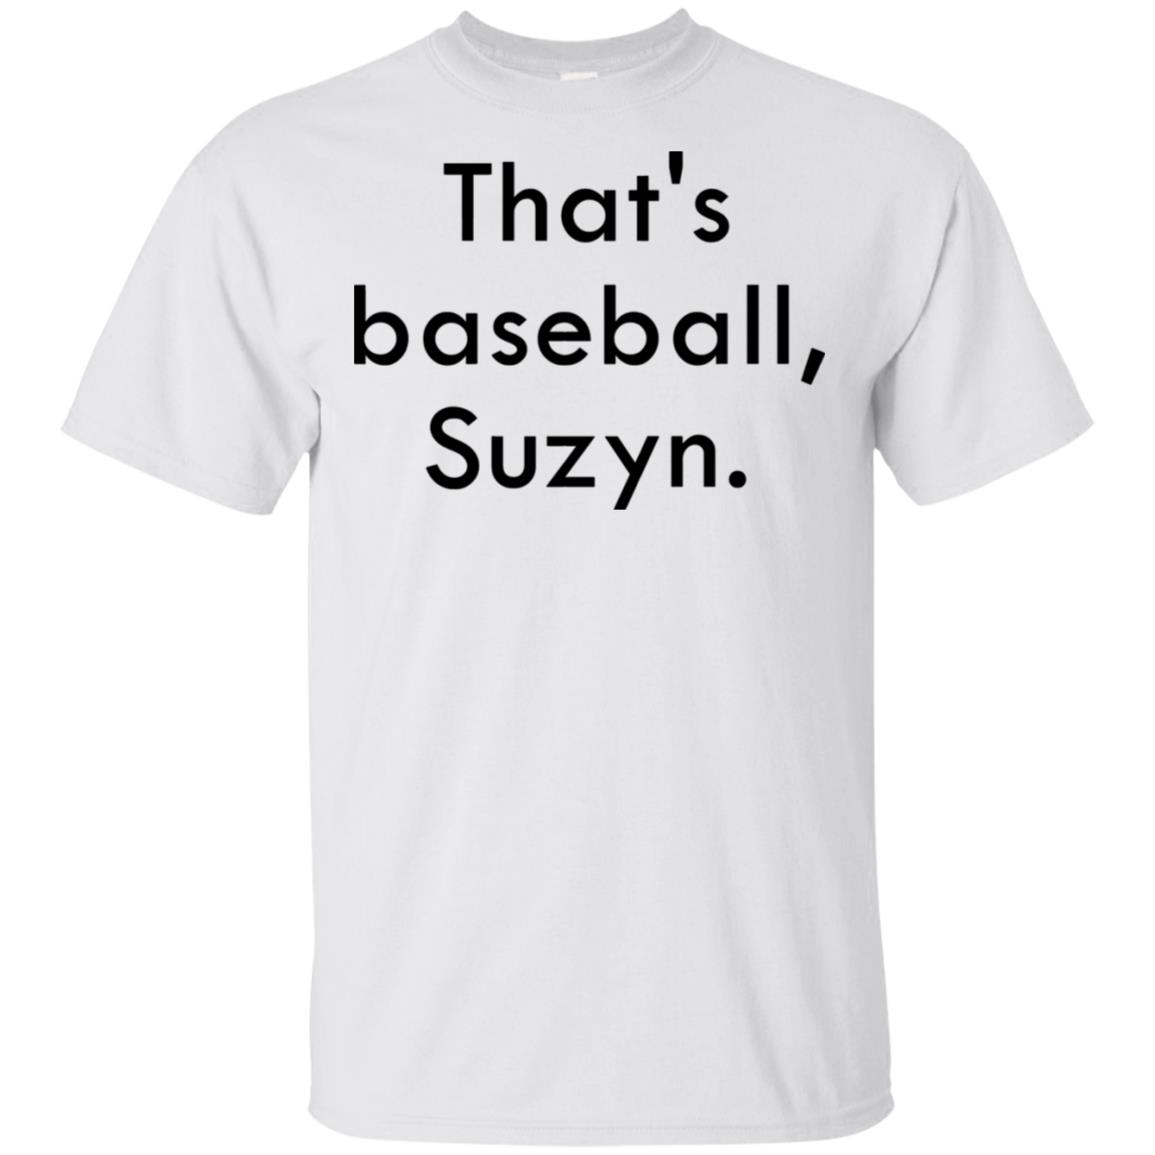 thats baseball suzyn shirt